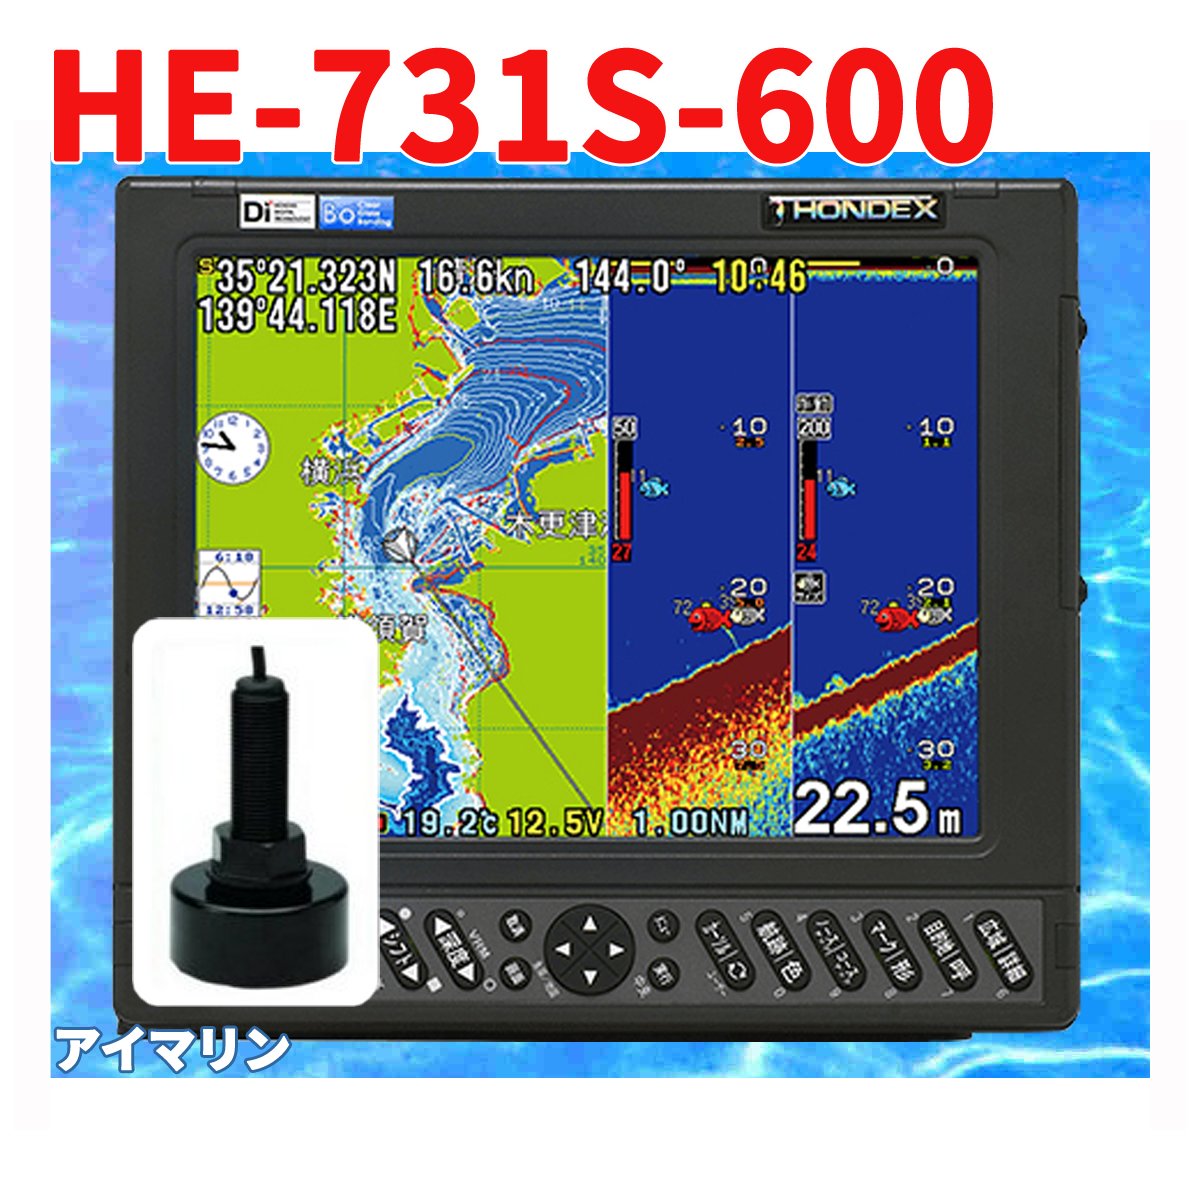 5/13 ݌ɂ QTm@ HONDEX HE-731S 600w TD28 Uqt GPS T Aei zfbNX